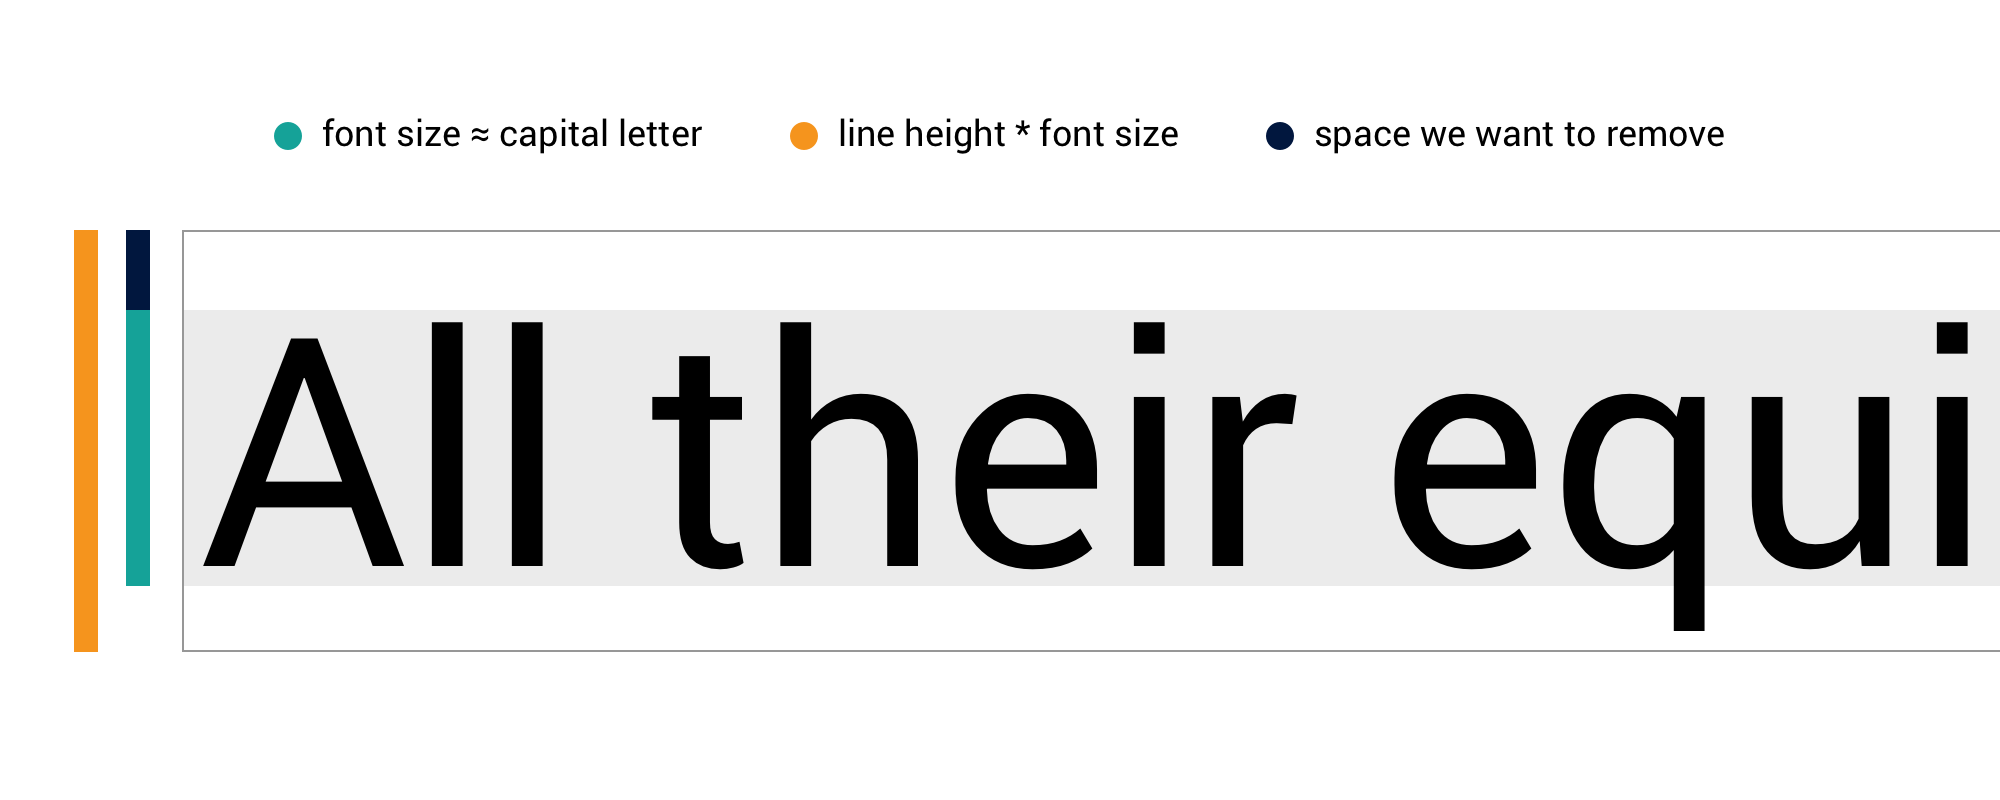 P line height. Line-height. Line-height html. Высота строки CSS. Line-height CSS что это.